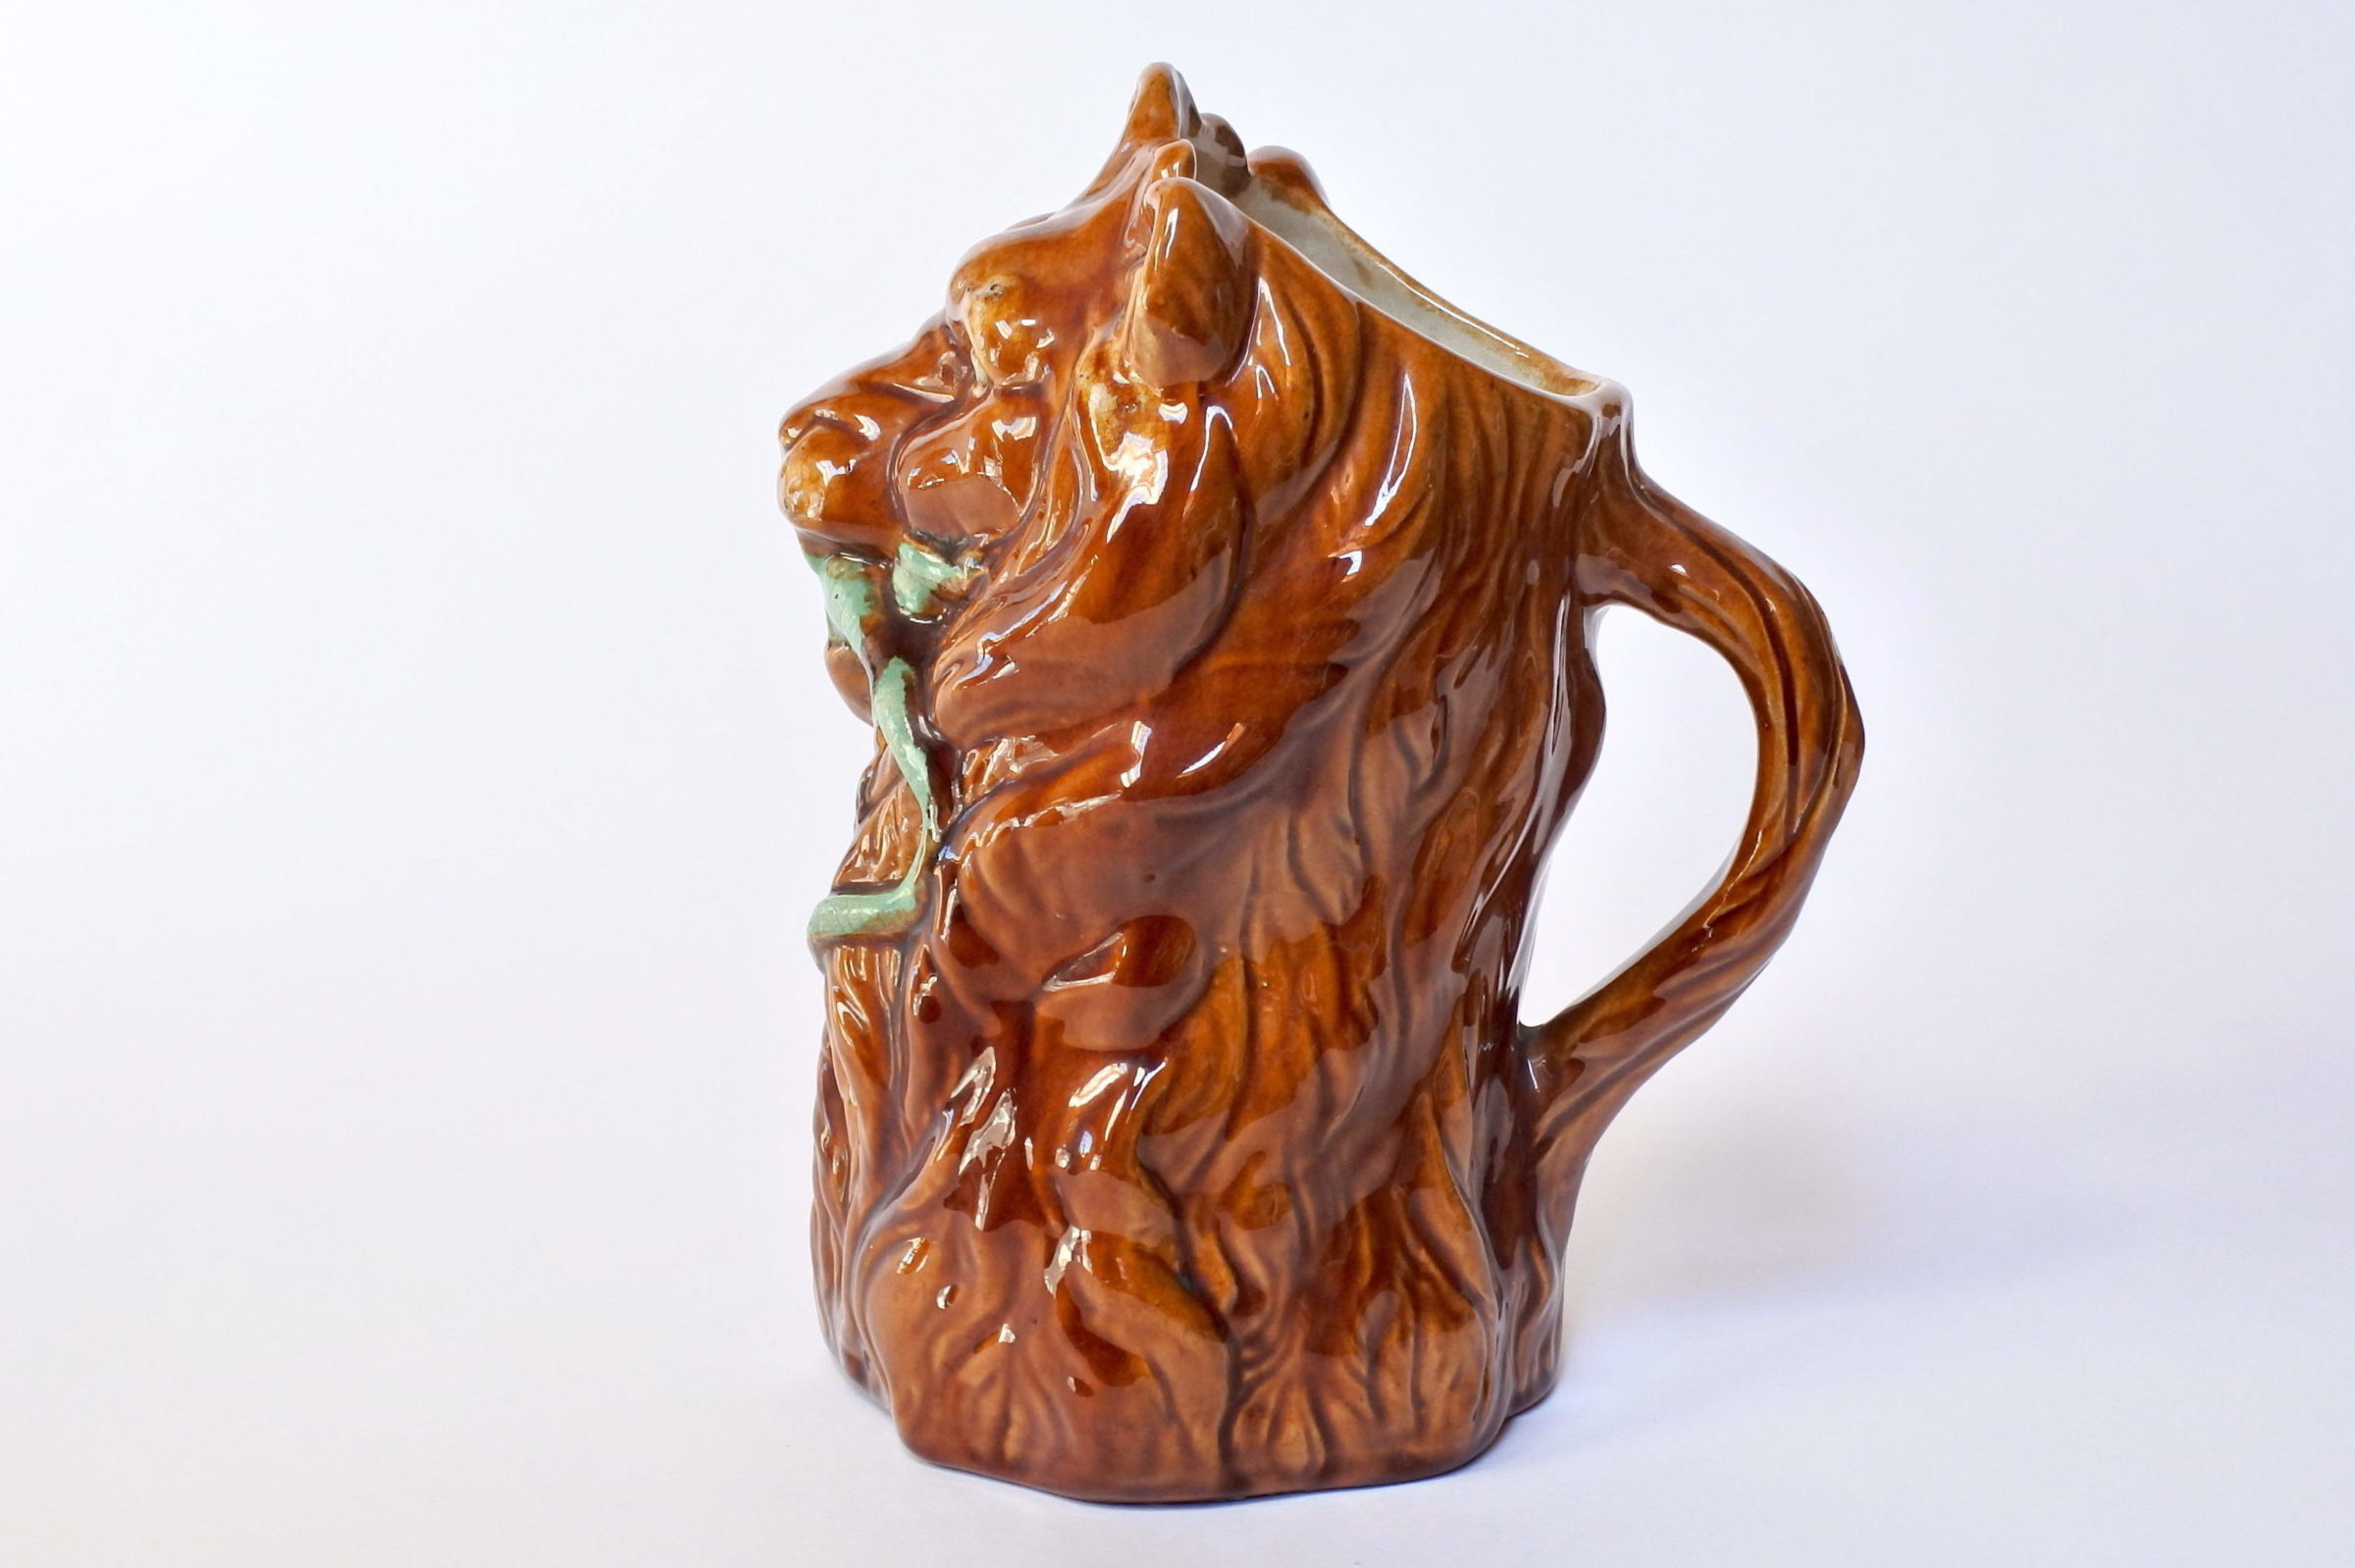 Brocca in ceramica barbotine a forma di leone con lucertola - 2